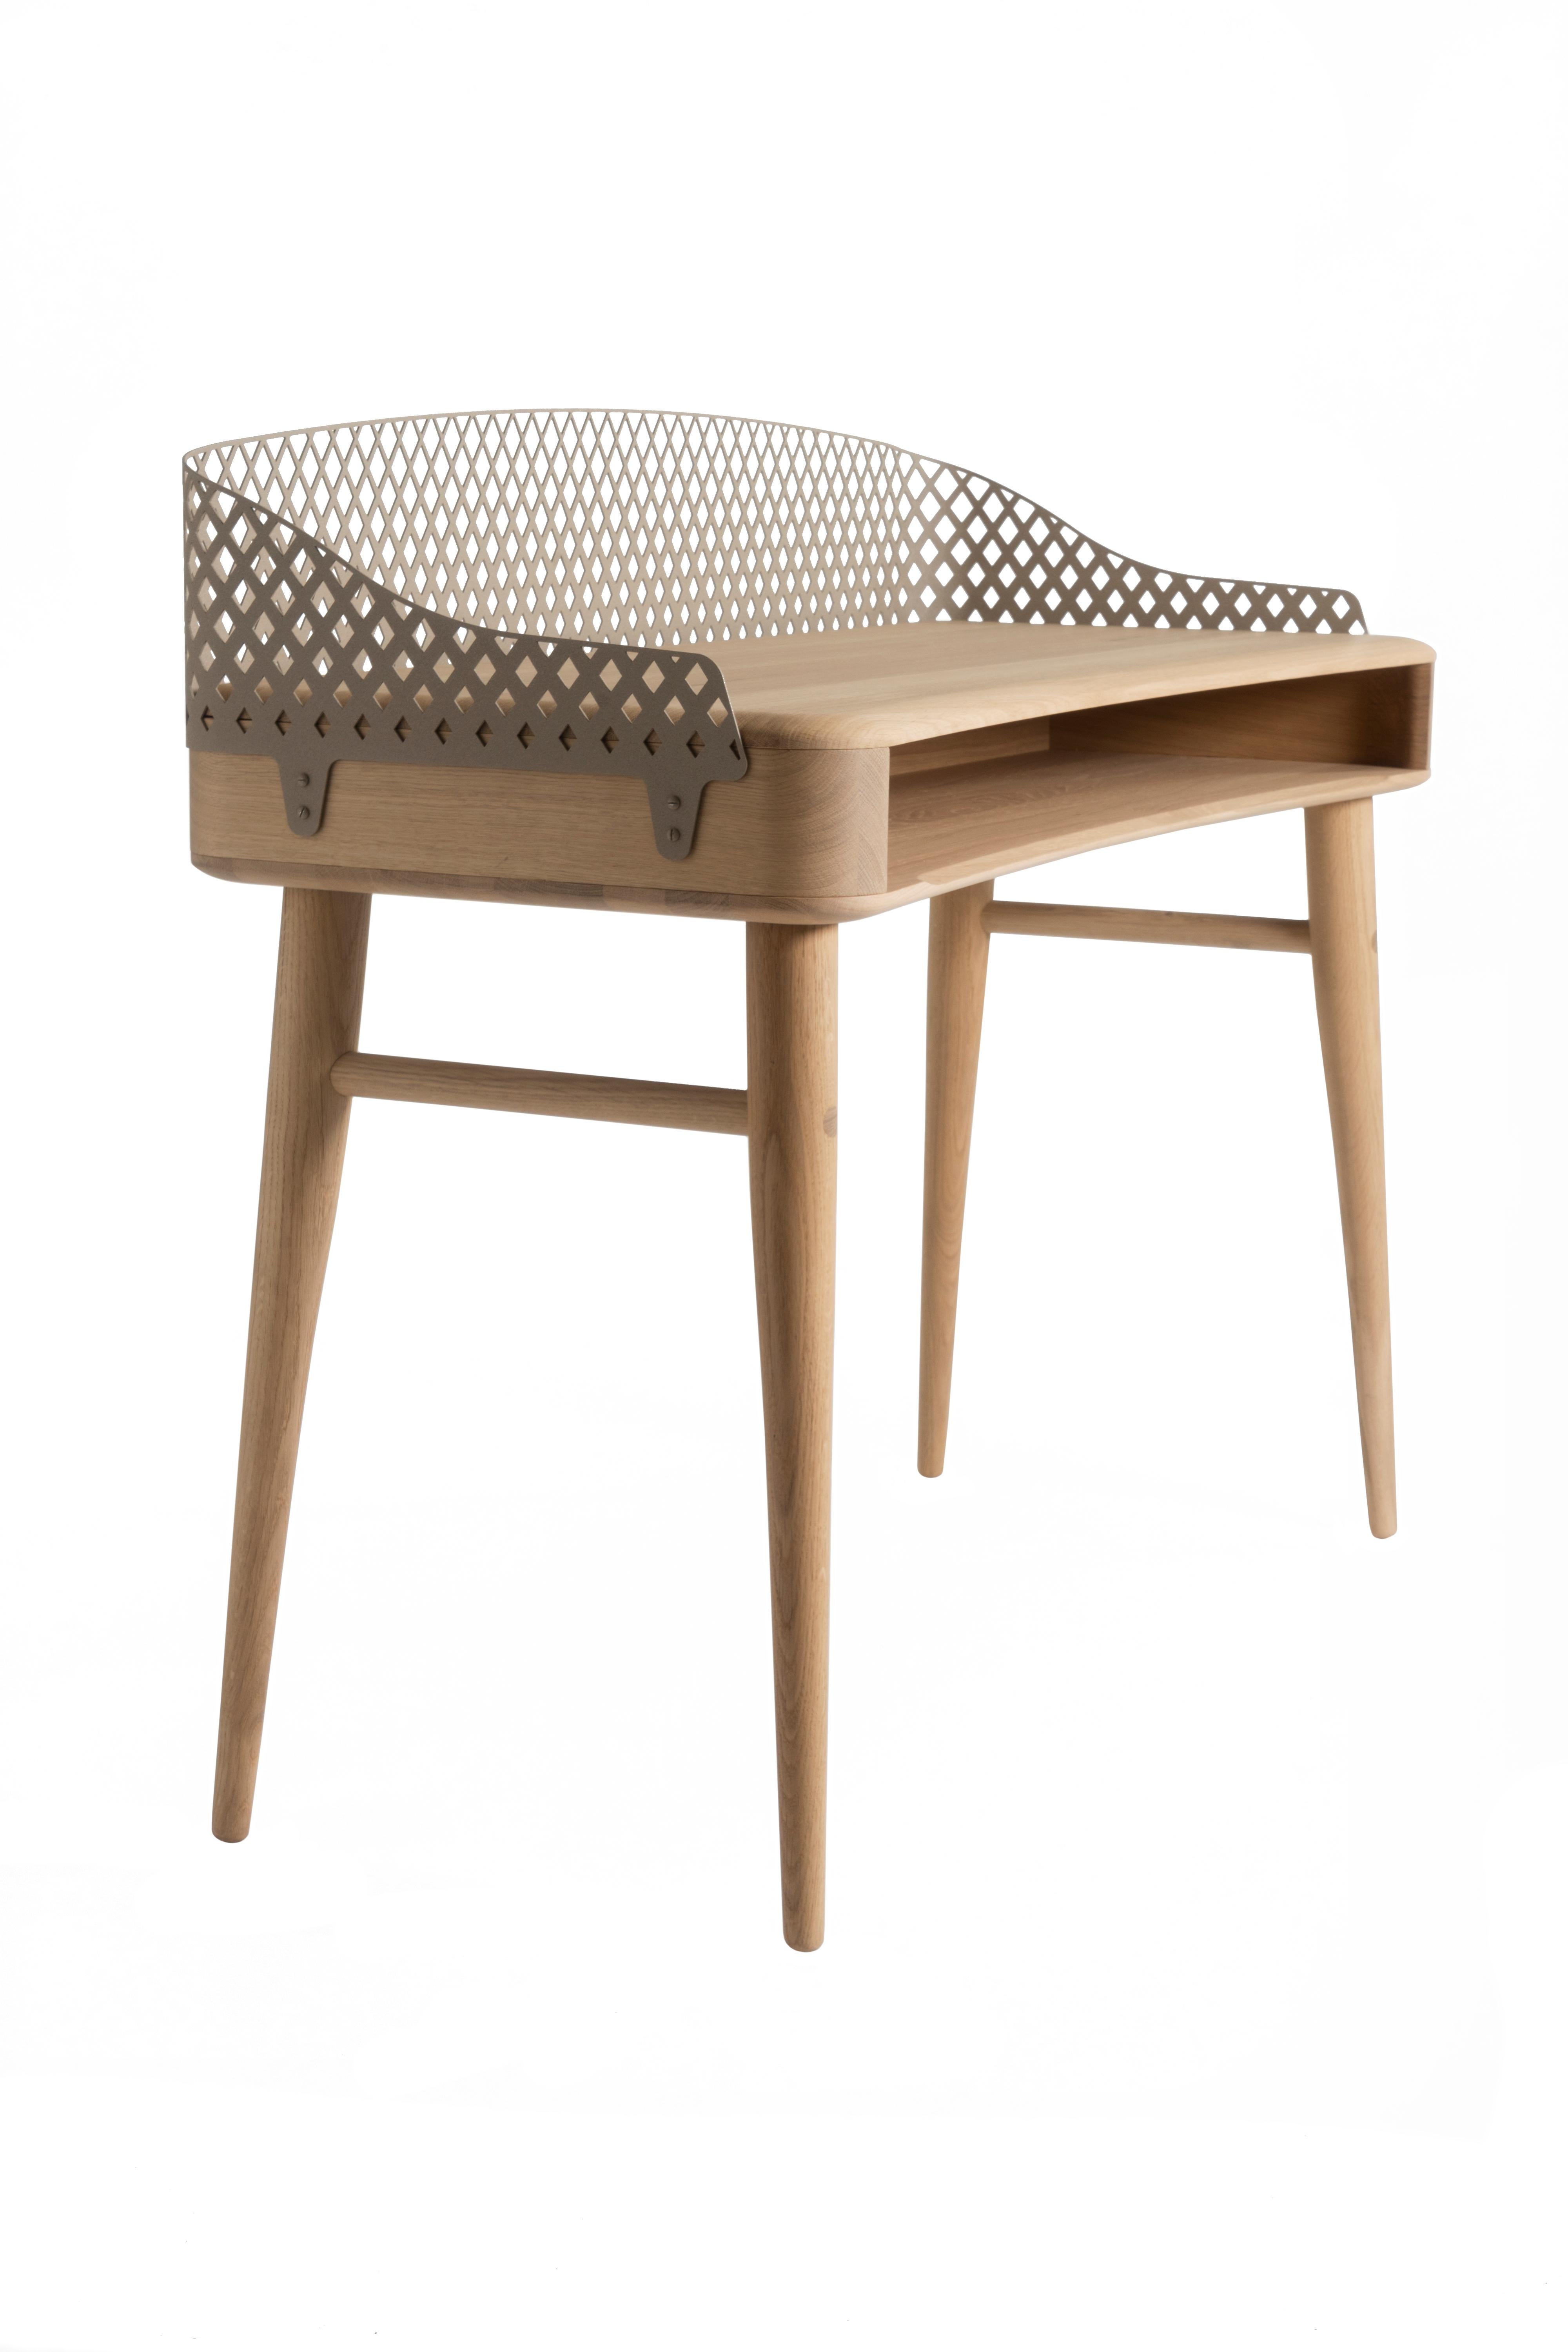 Dutch Revised Edburton – solid oak desk For Sale